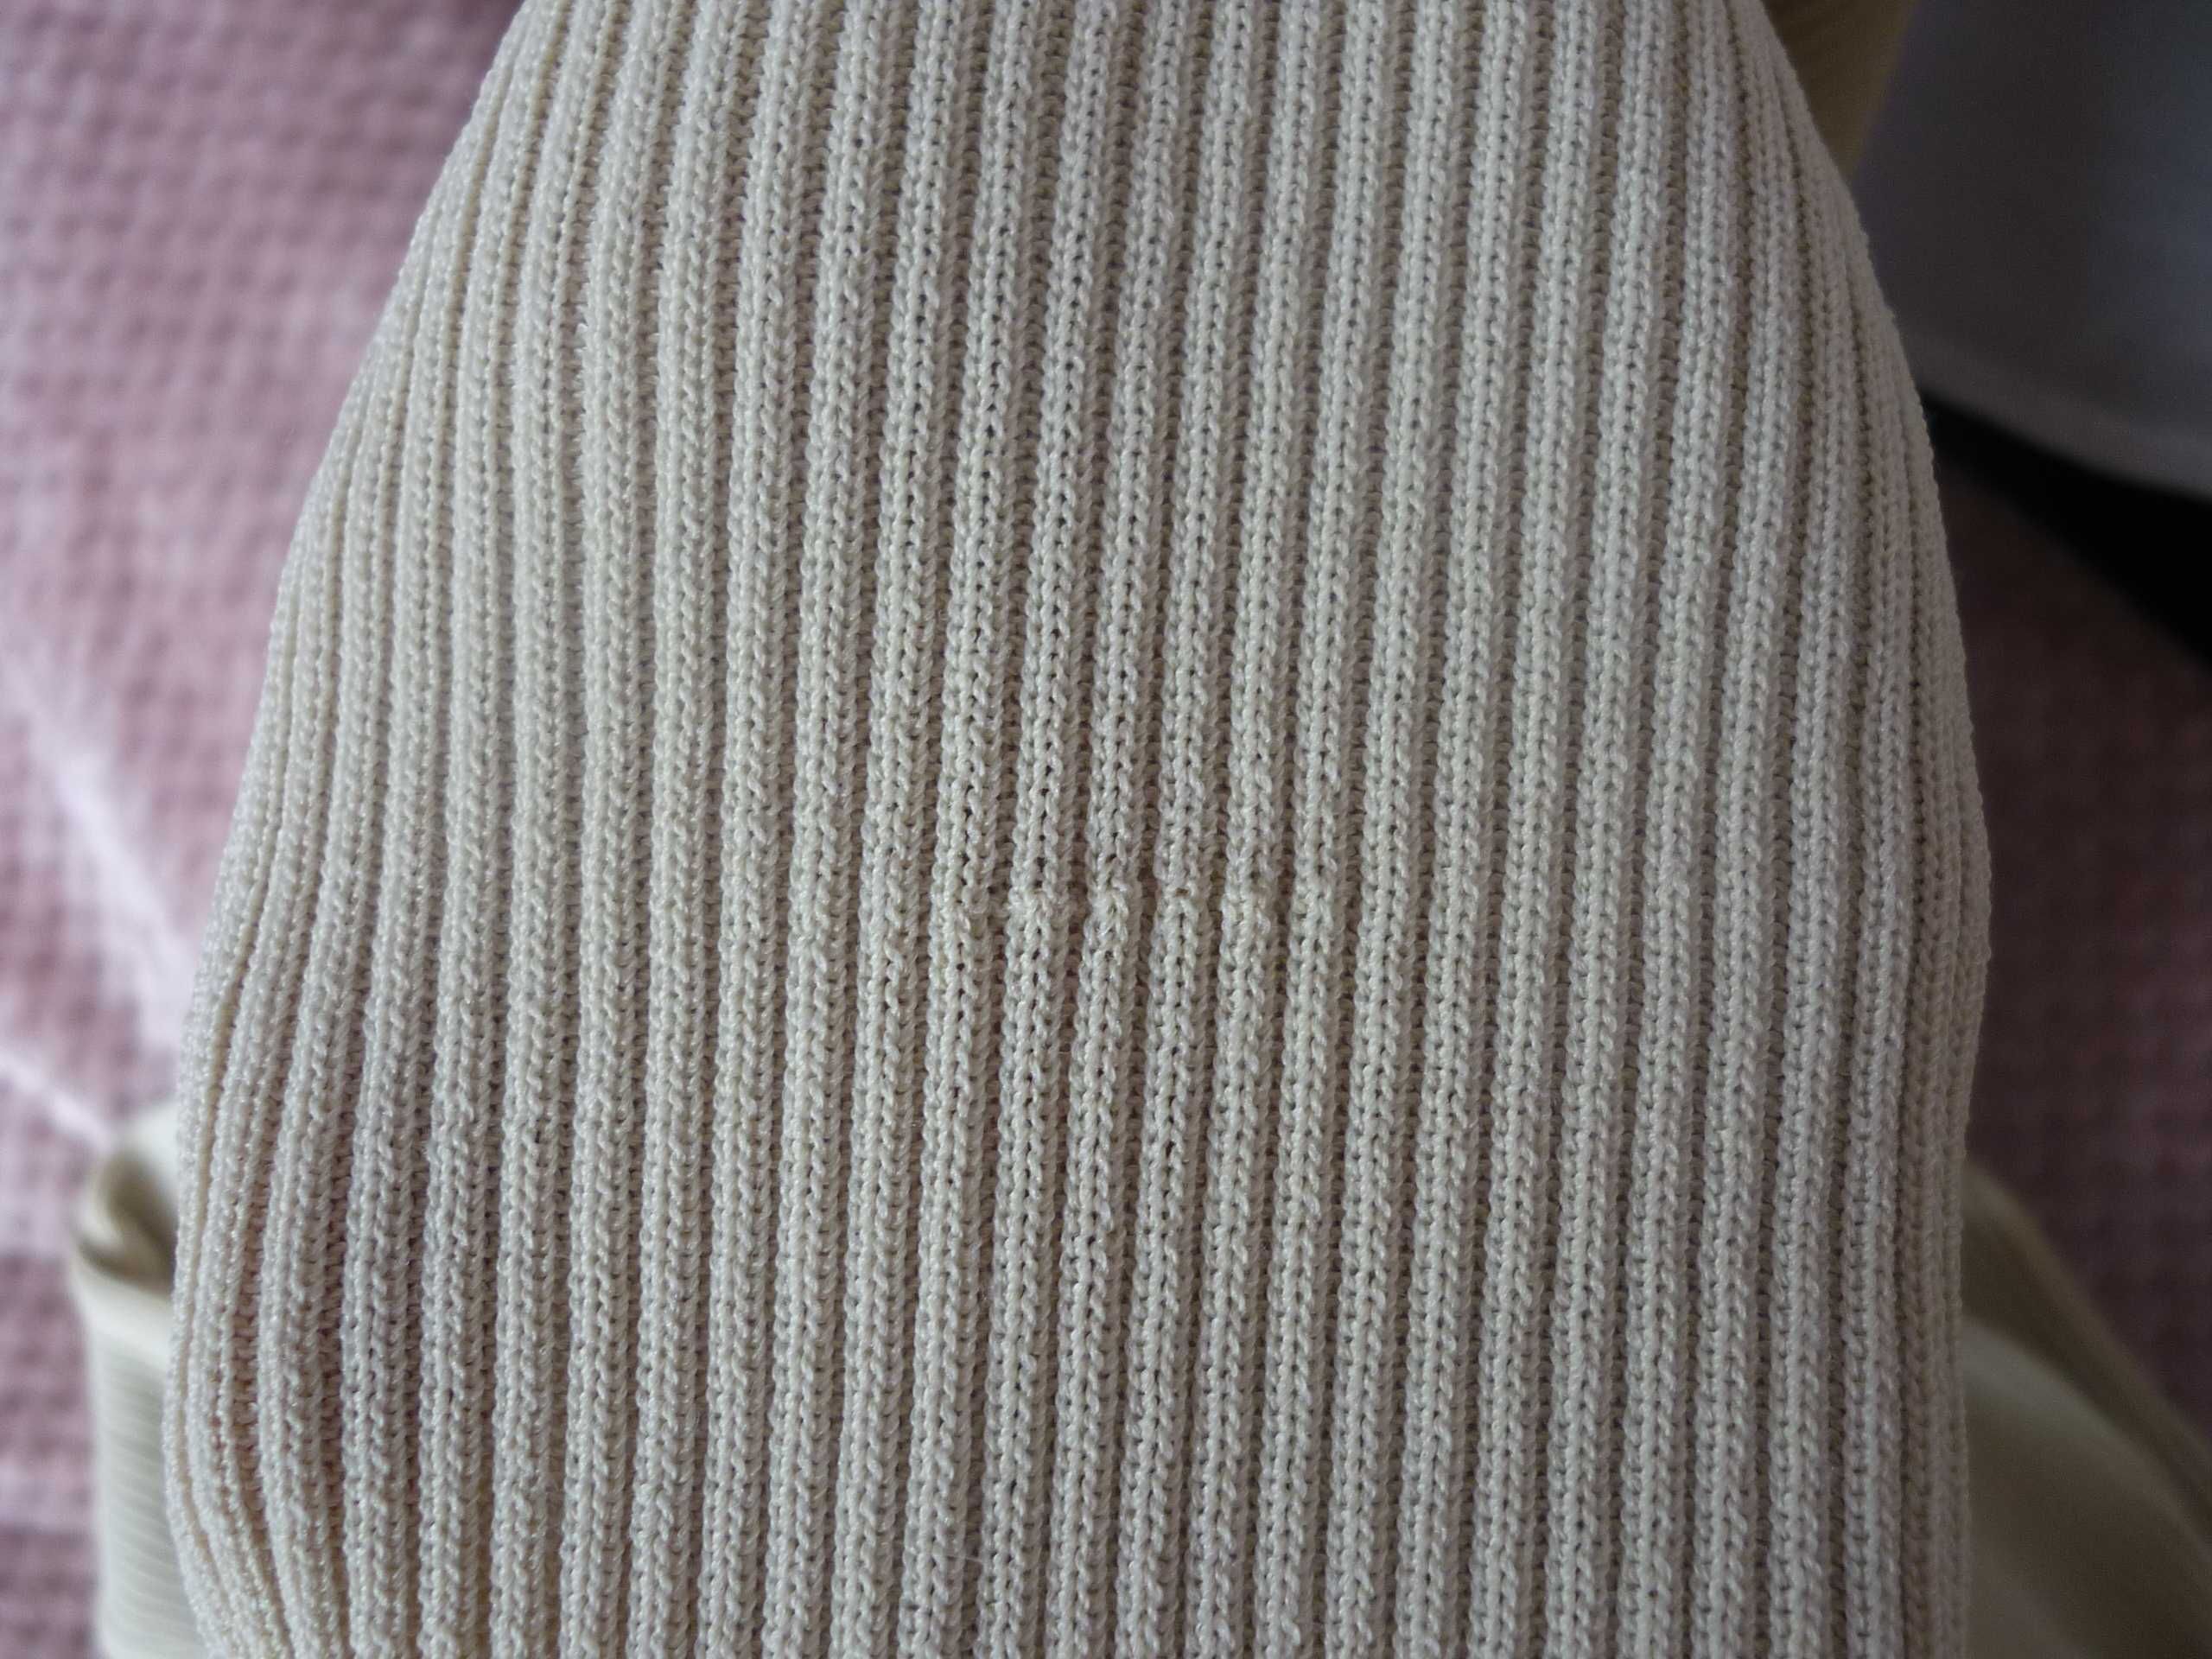 Kardigan, długi sweter firmy DKNY w rozmiarze M